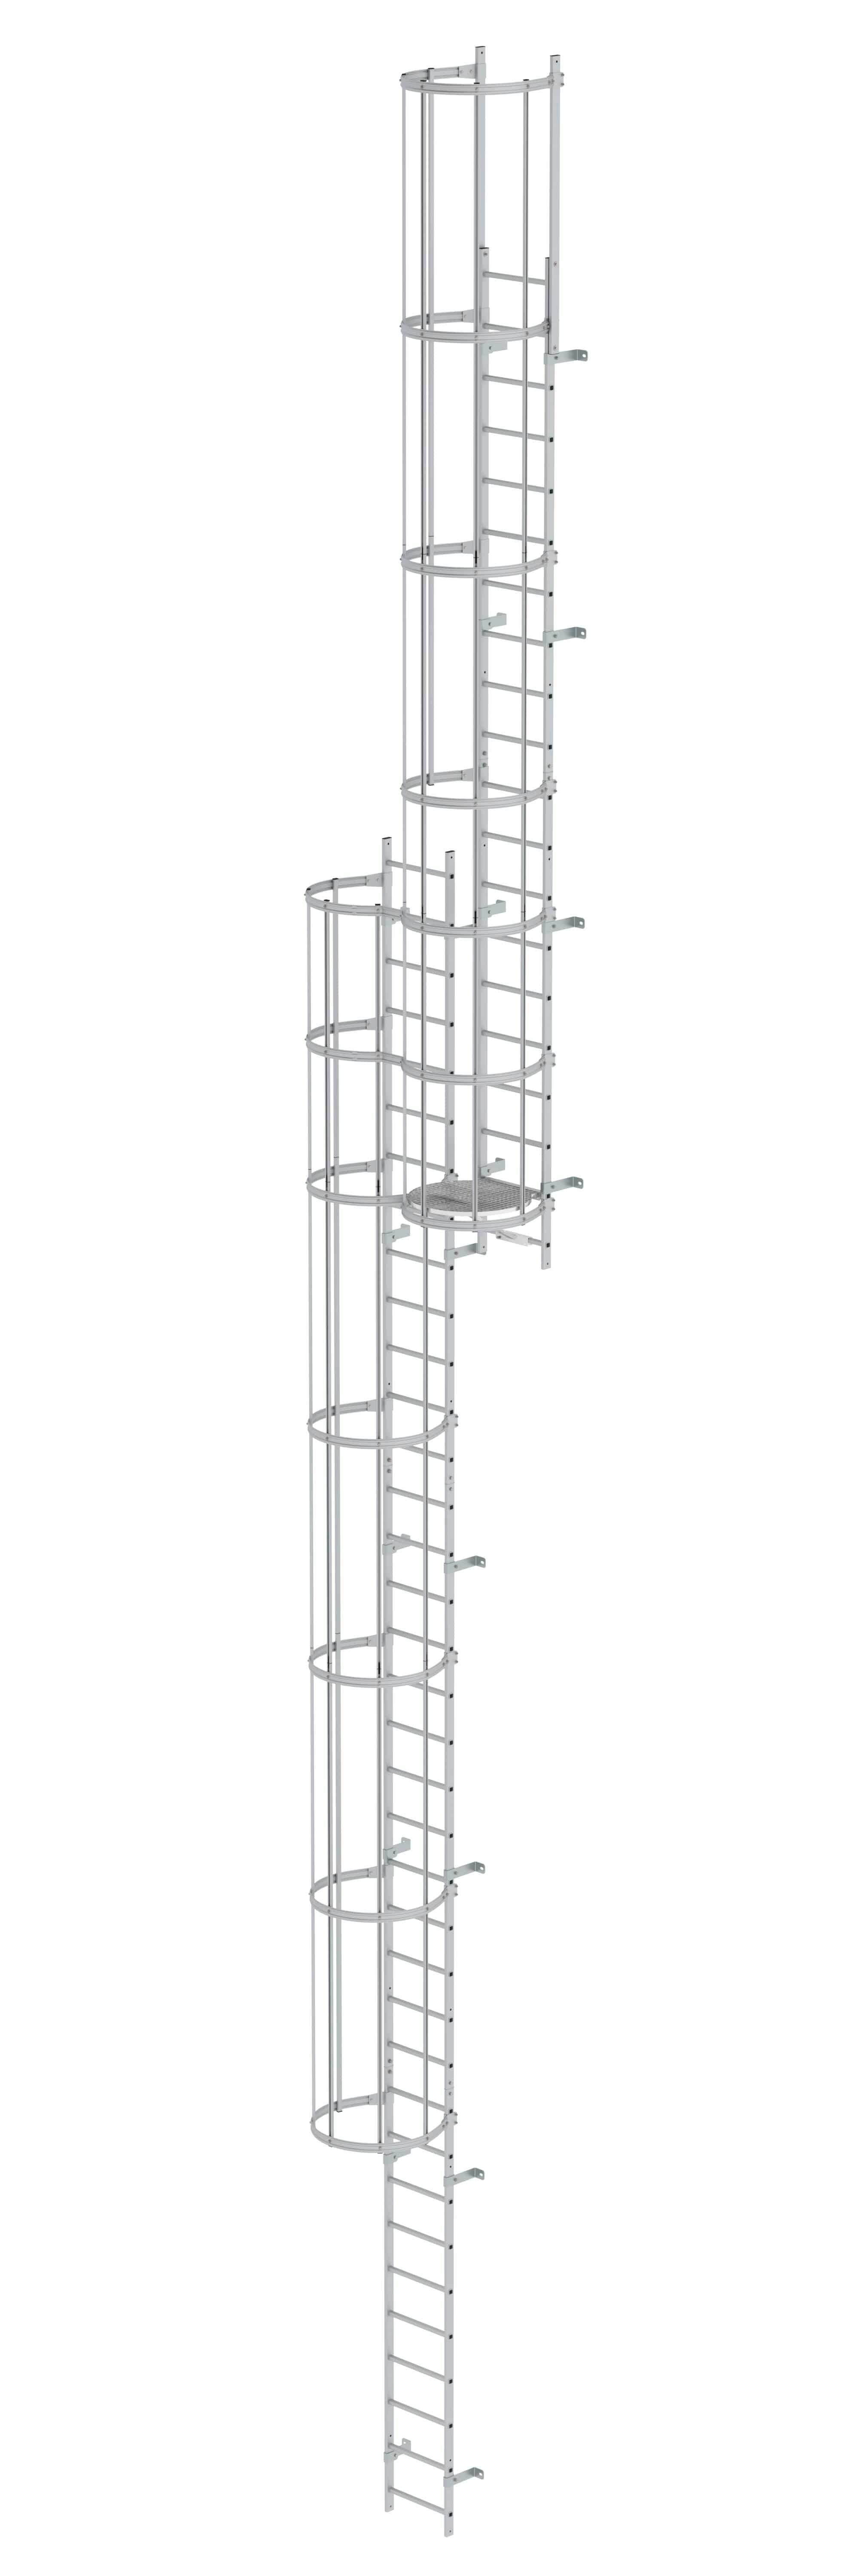 Munk Mehrzügige Steigleiter mit Rückenschutz (Bau) Aluminium eloxiert 14,64m